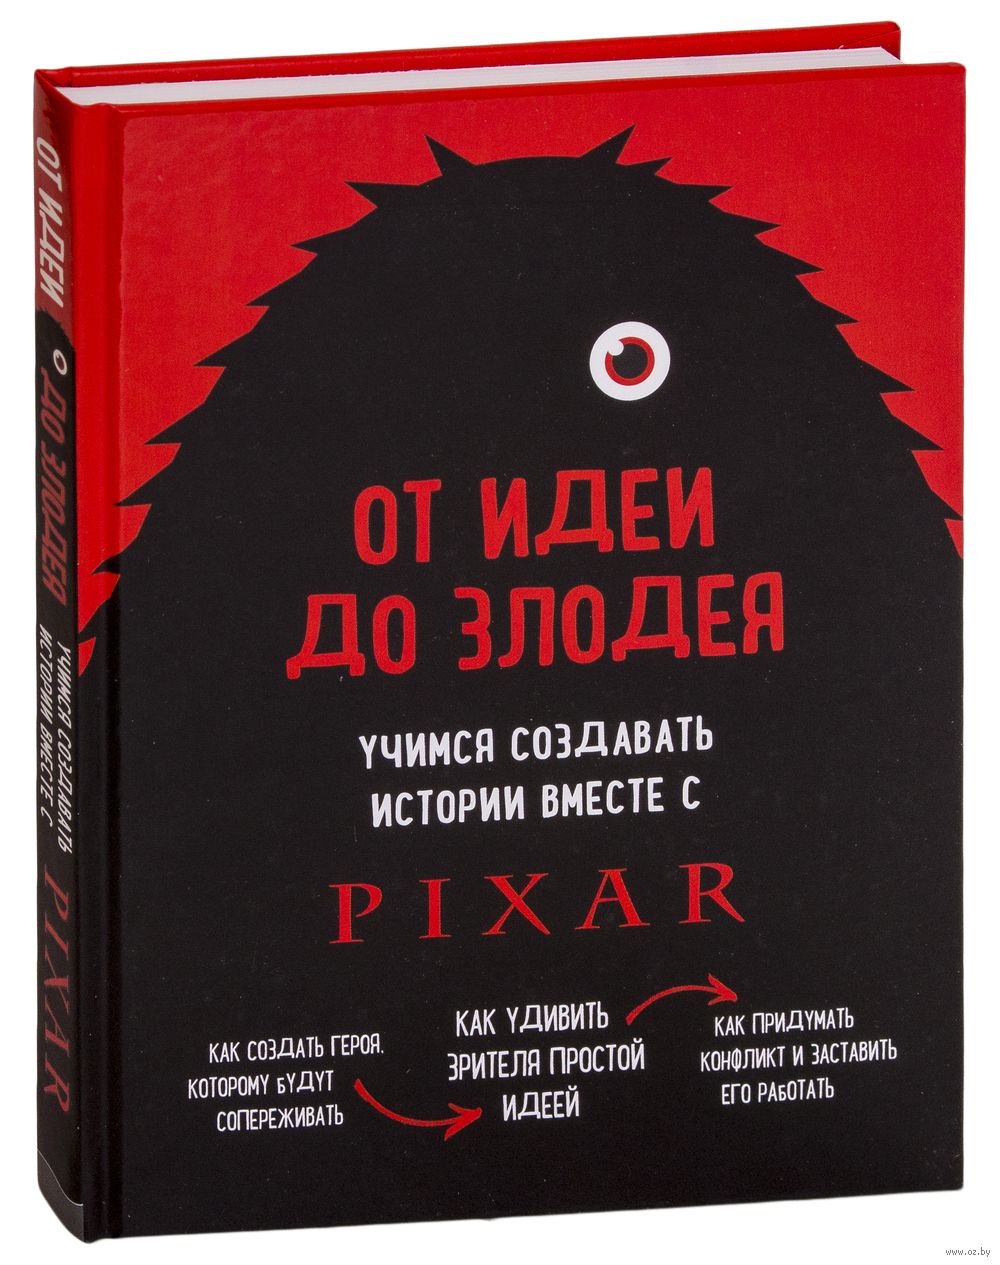 Сделаем и историй на каждый. От идеи до злодея книга. От идеи до злодея книга Пиксар. Pixar от идеи до злодея.